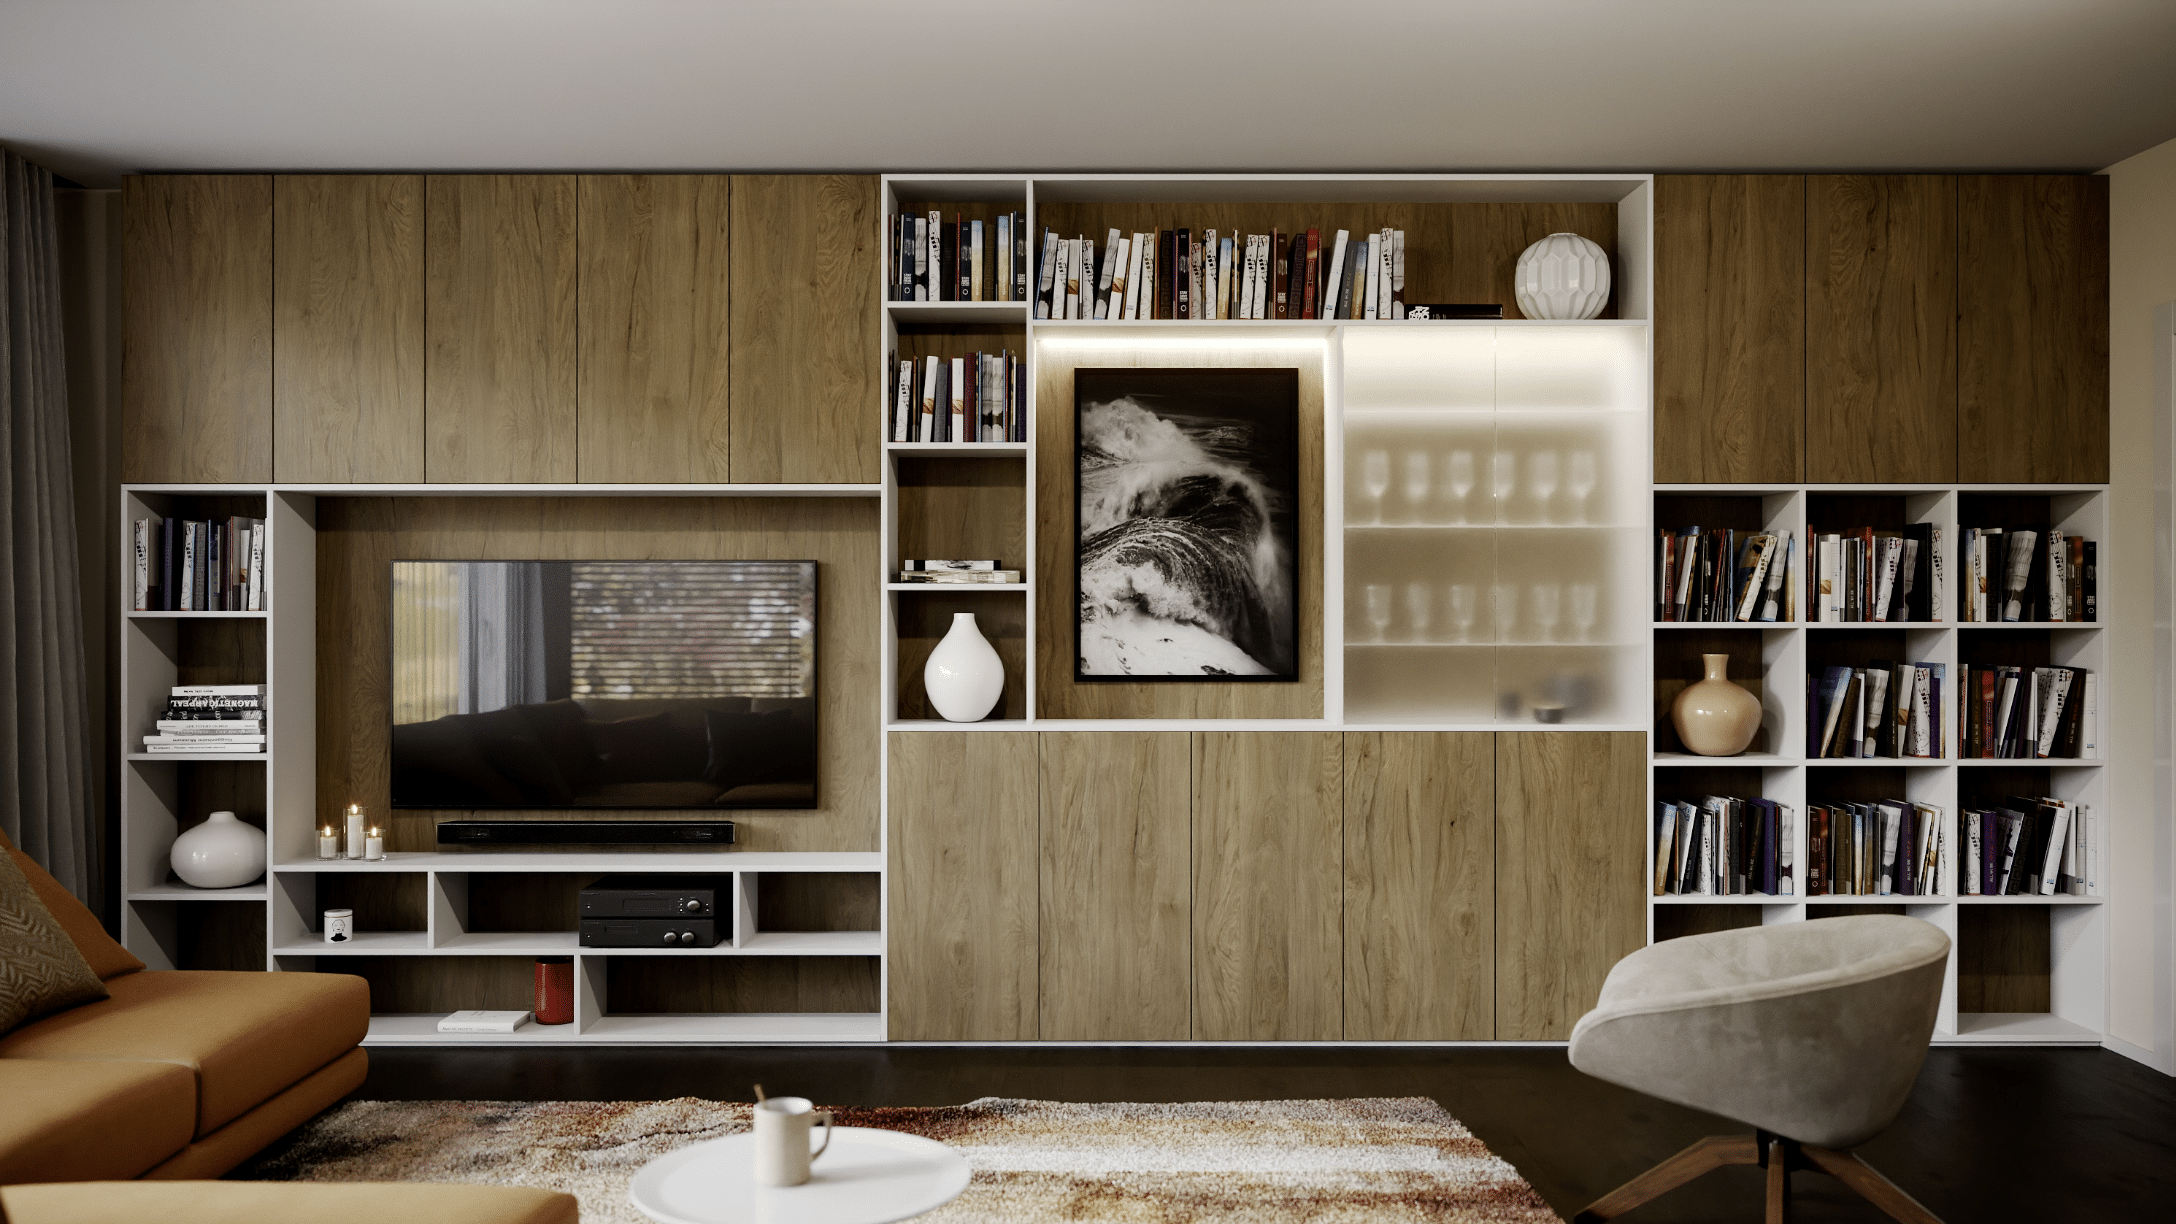 KRONOSPAN zeigt einen praktischen Wohnzimmerverbau mit Schränken und Regalen.